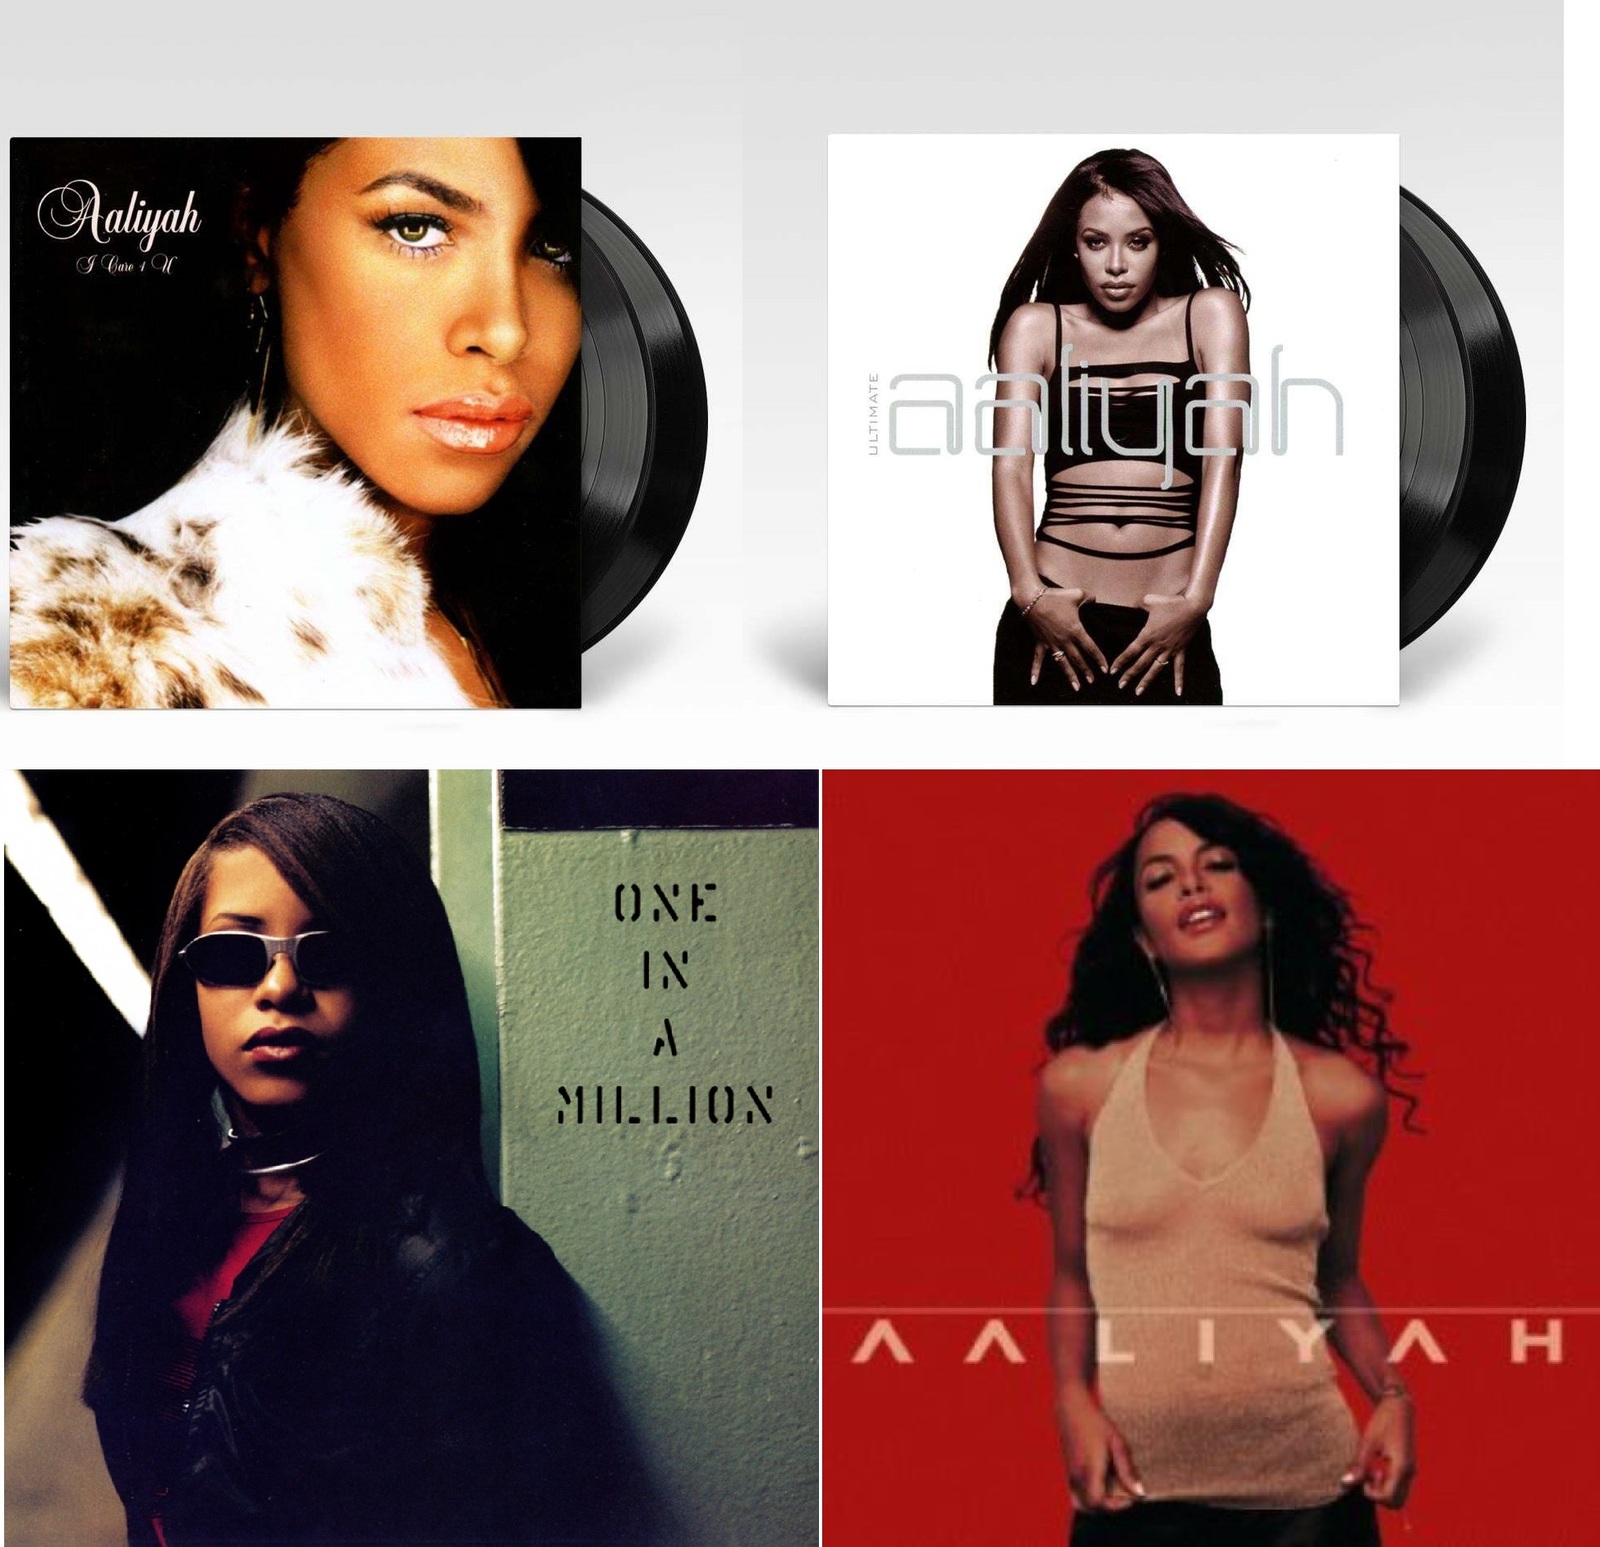 Aaliyah　Ultimate　A　Care　Million　Aaliyah　In　One　vinyl　I　BUNDLE　U　LP